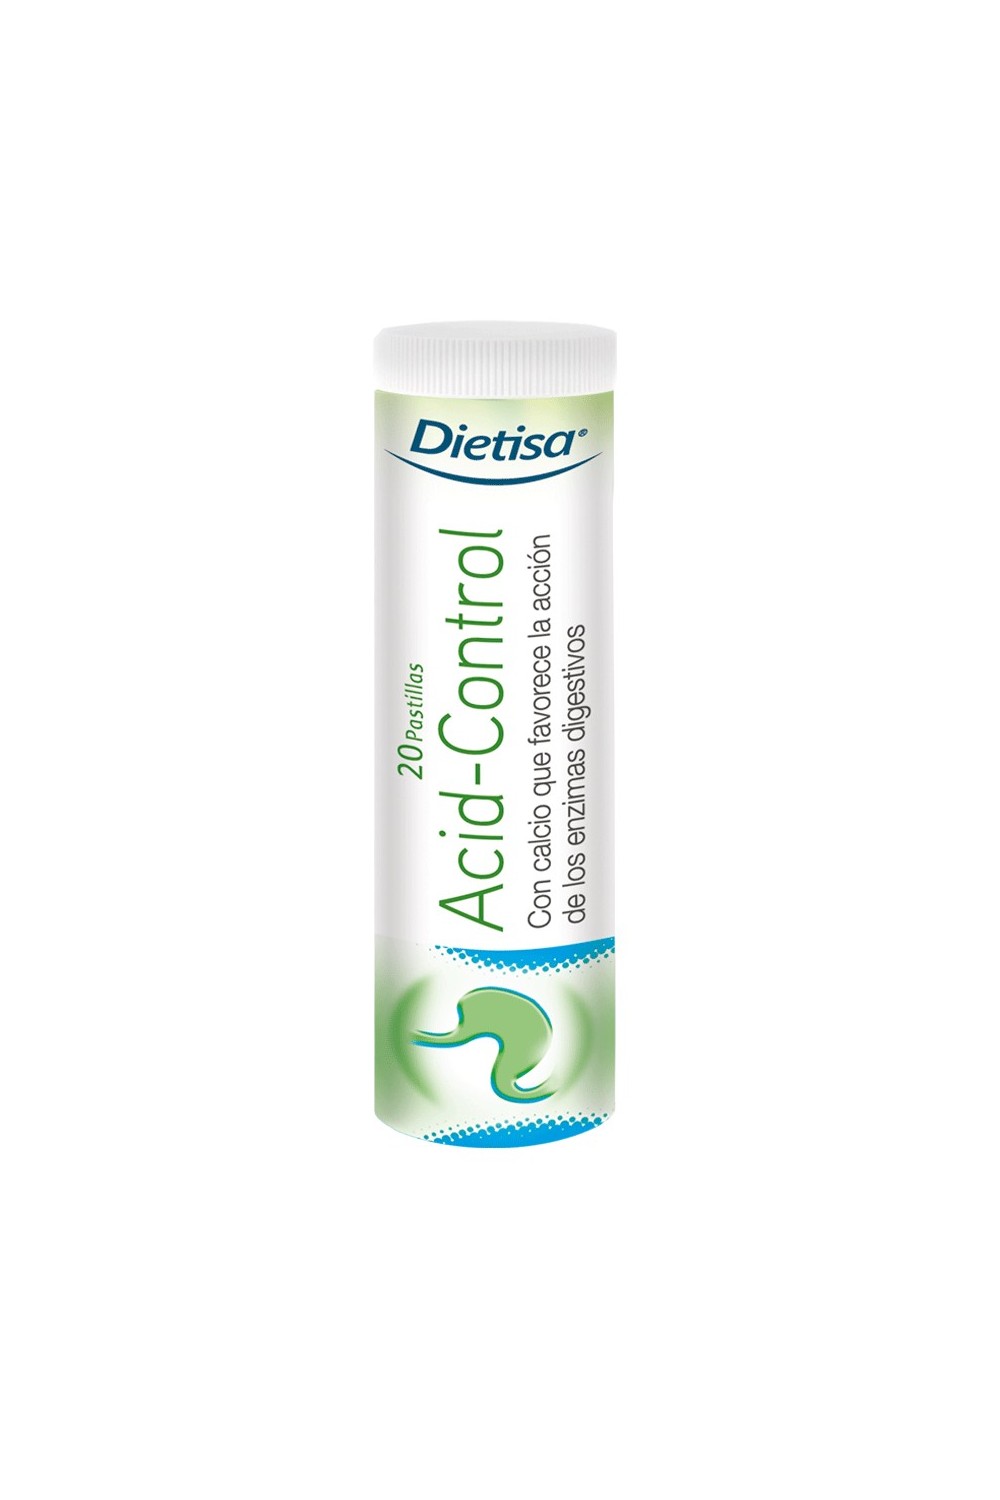 Dietisa Acid Control Gastric 20 Pastillas